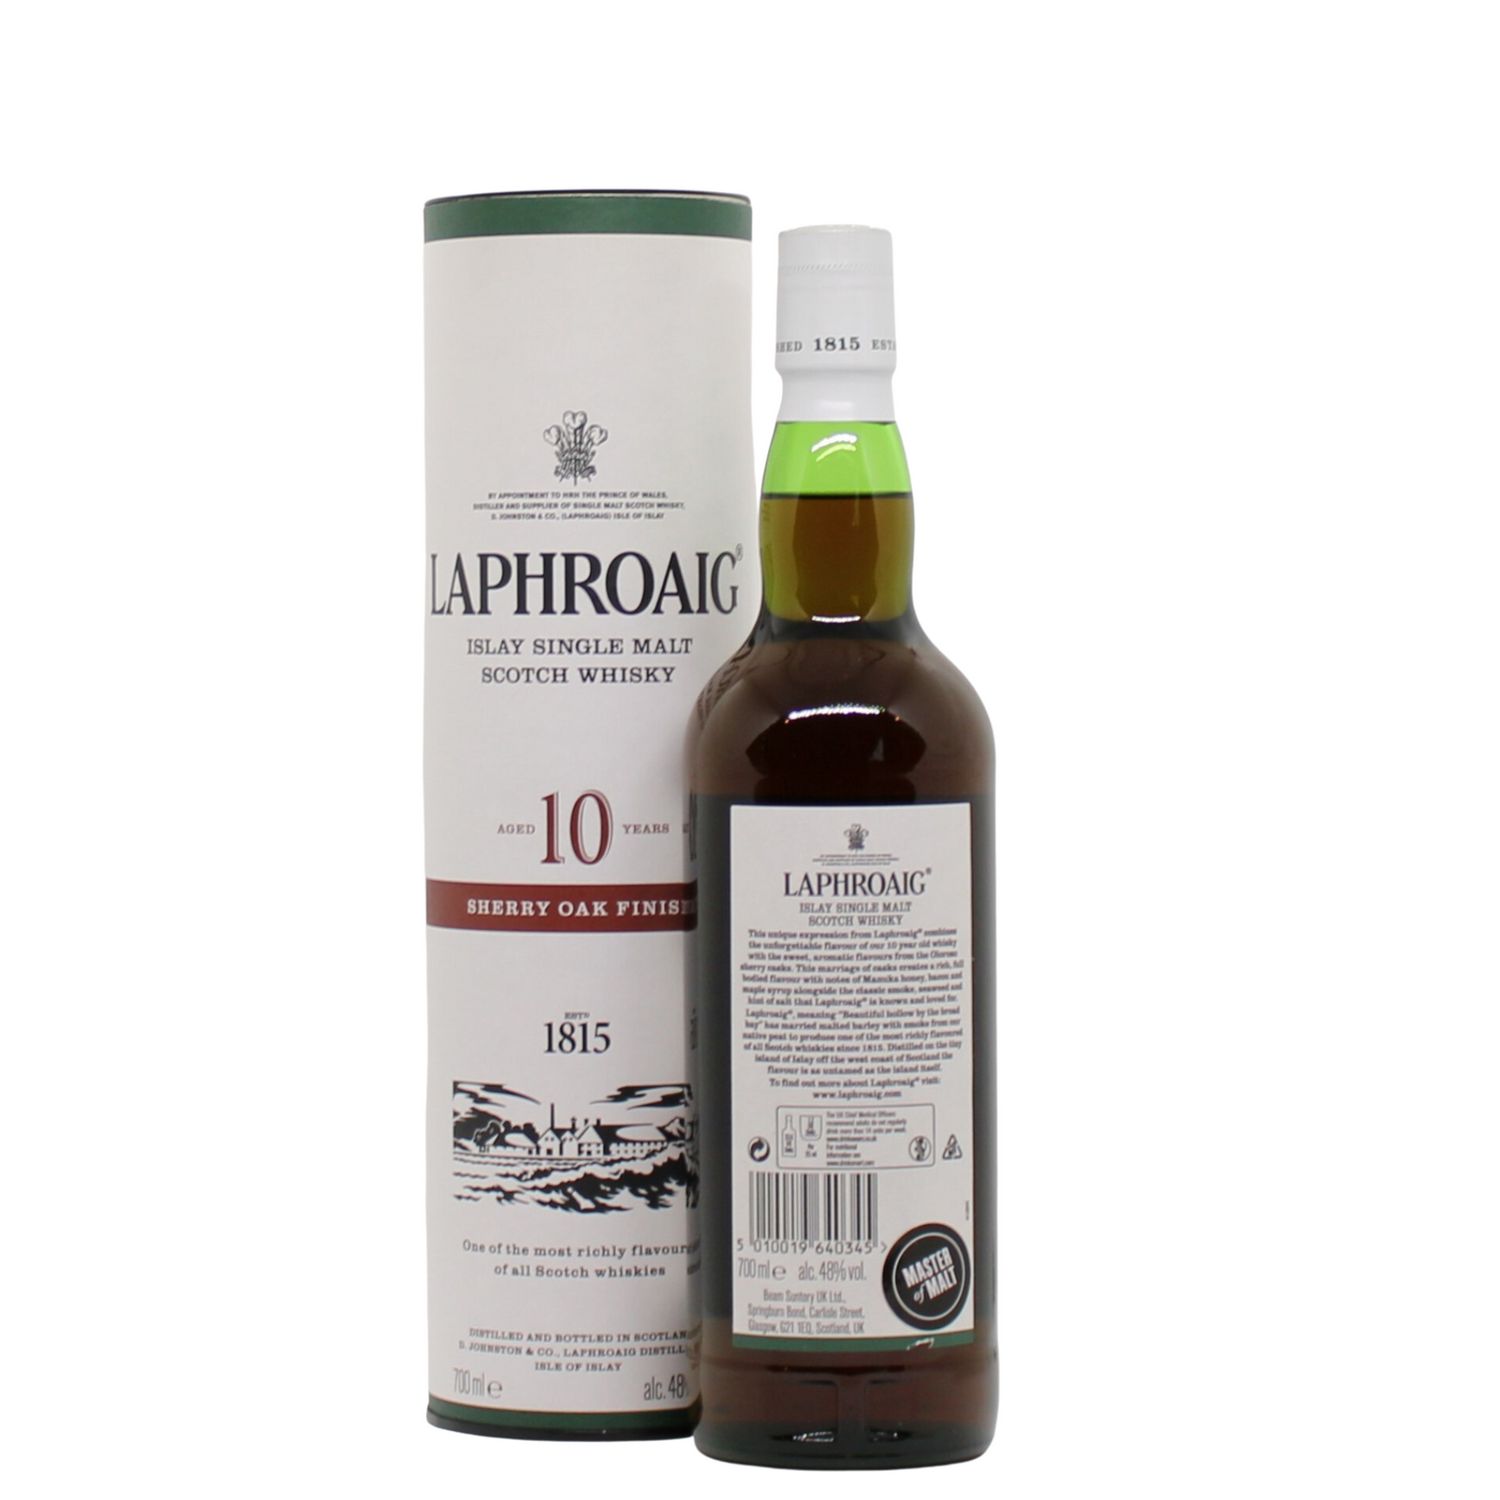 Laphroaig 10 Year Old Sherry Oak Finish Single Malt Islay Scotch Whisky